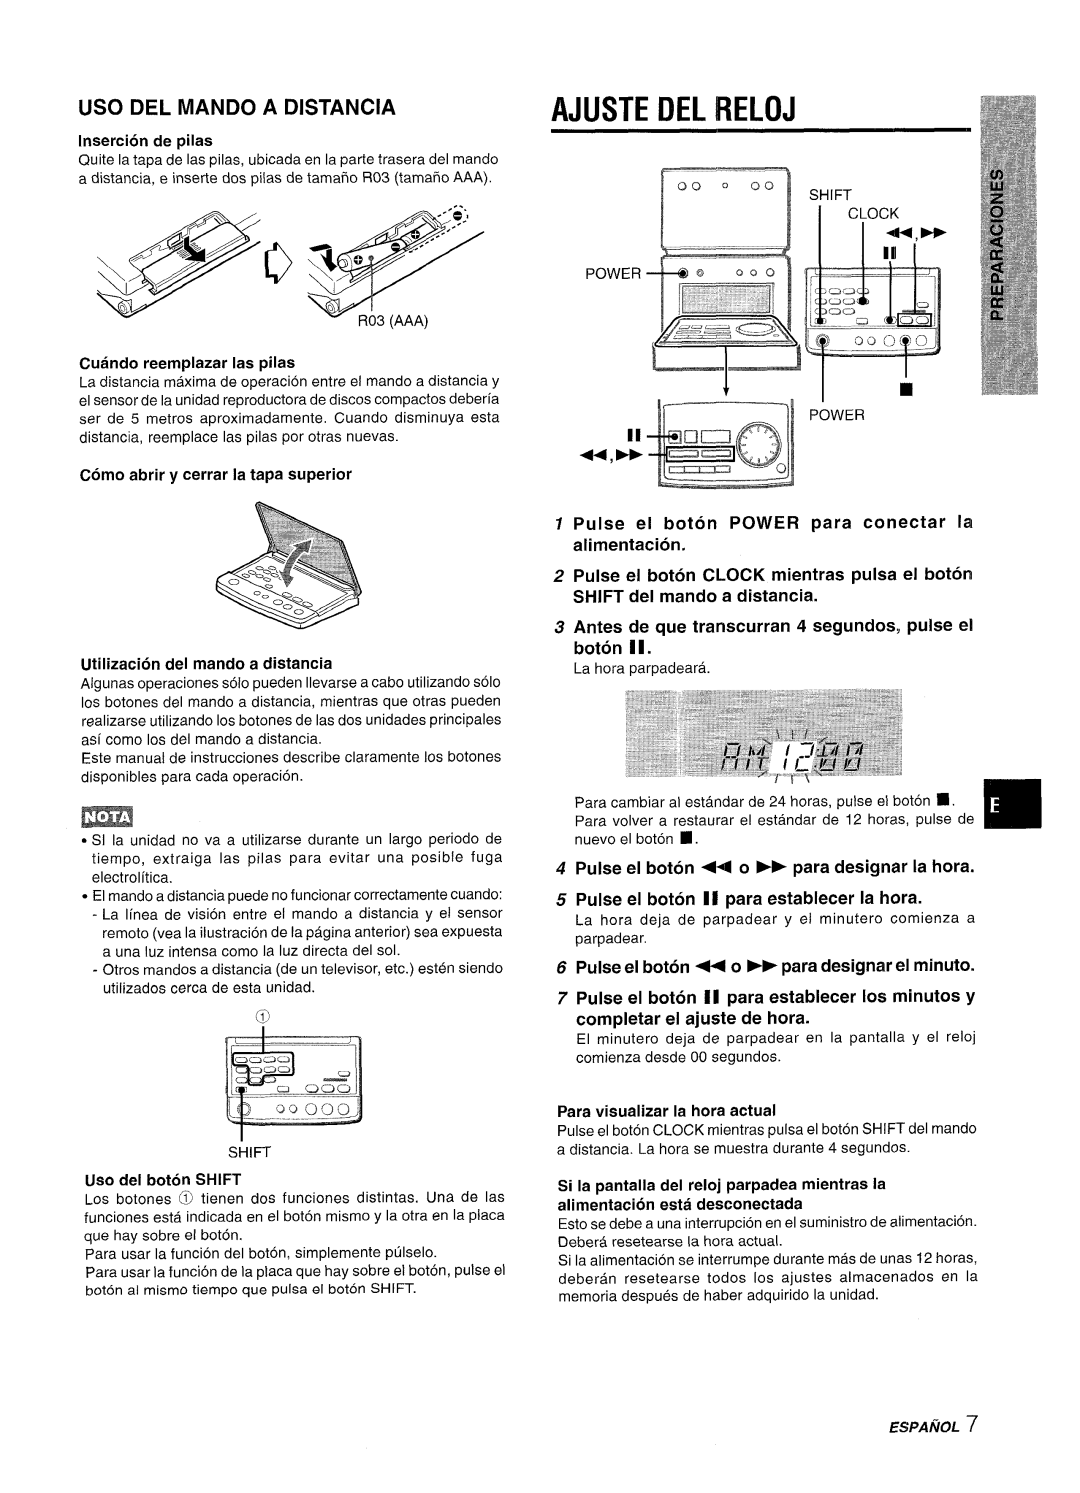 Aiwa XR-M70 manual Ajuste Del Reloj, Uso Del Mando A Distancia, Pulse el boton ++ o FF para designar el minute 